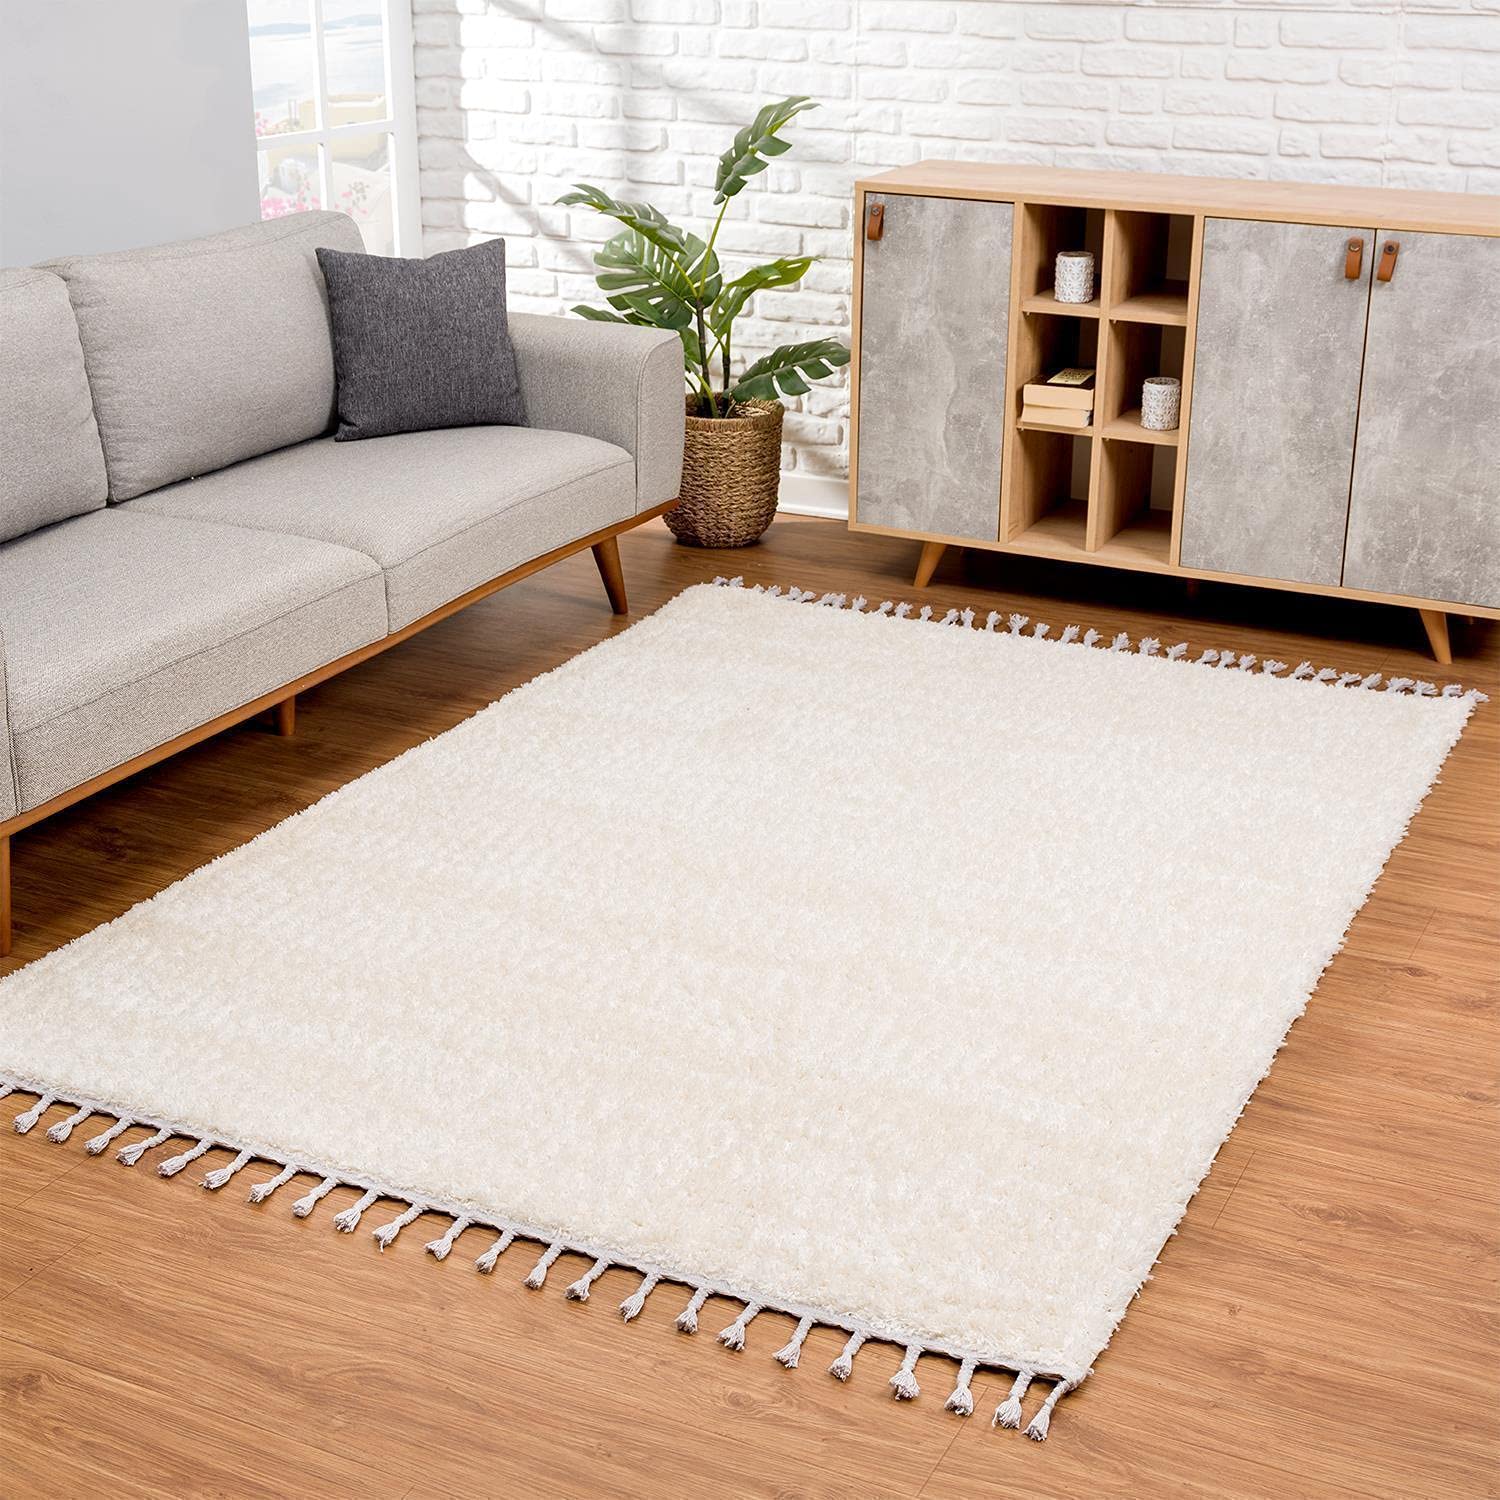 carpet city Teppich Wohnzimmer - Shaggy Hochflor Creme - 80x150 cm Einfarbig - Moderne Teppiche mit Fransen